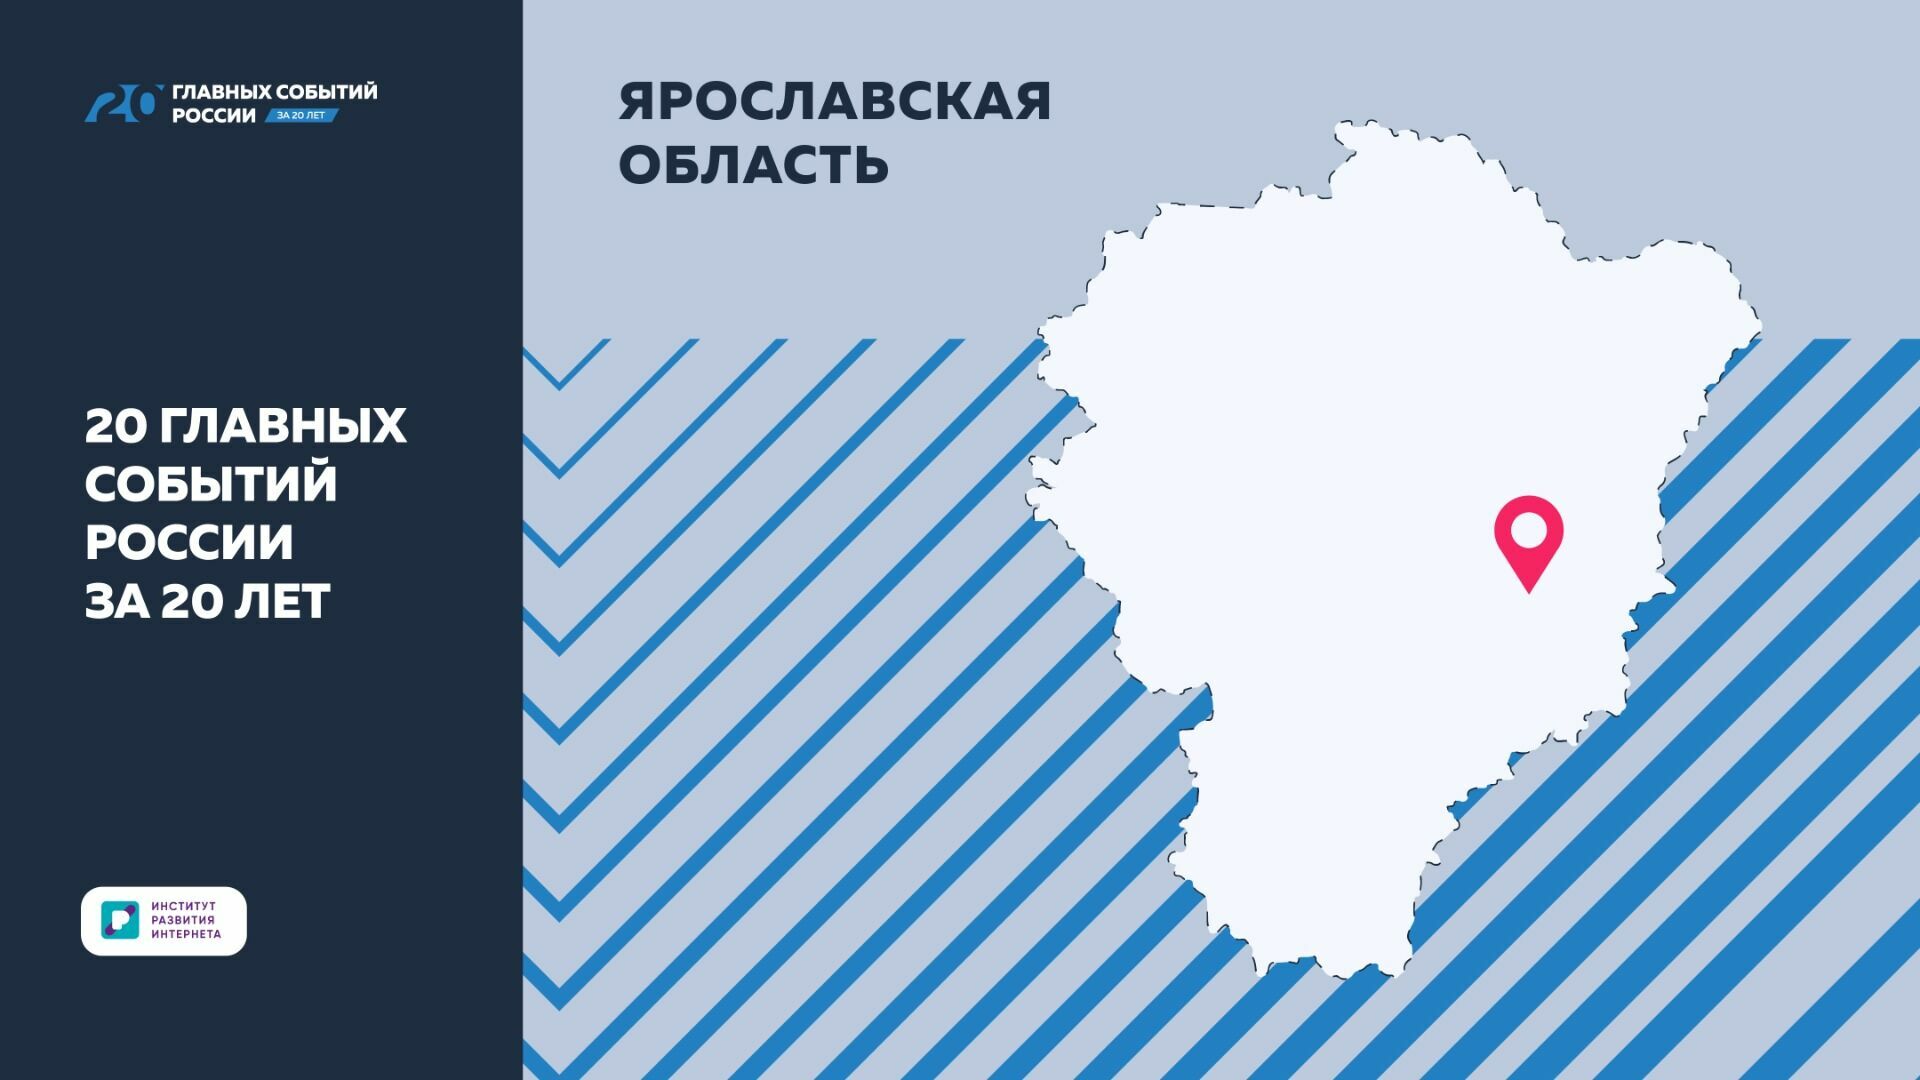 ИРИ: Достижения Ярославской области включили в “20 главных событий России за 20 лет”